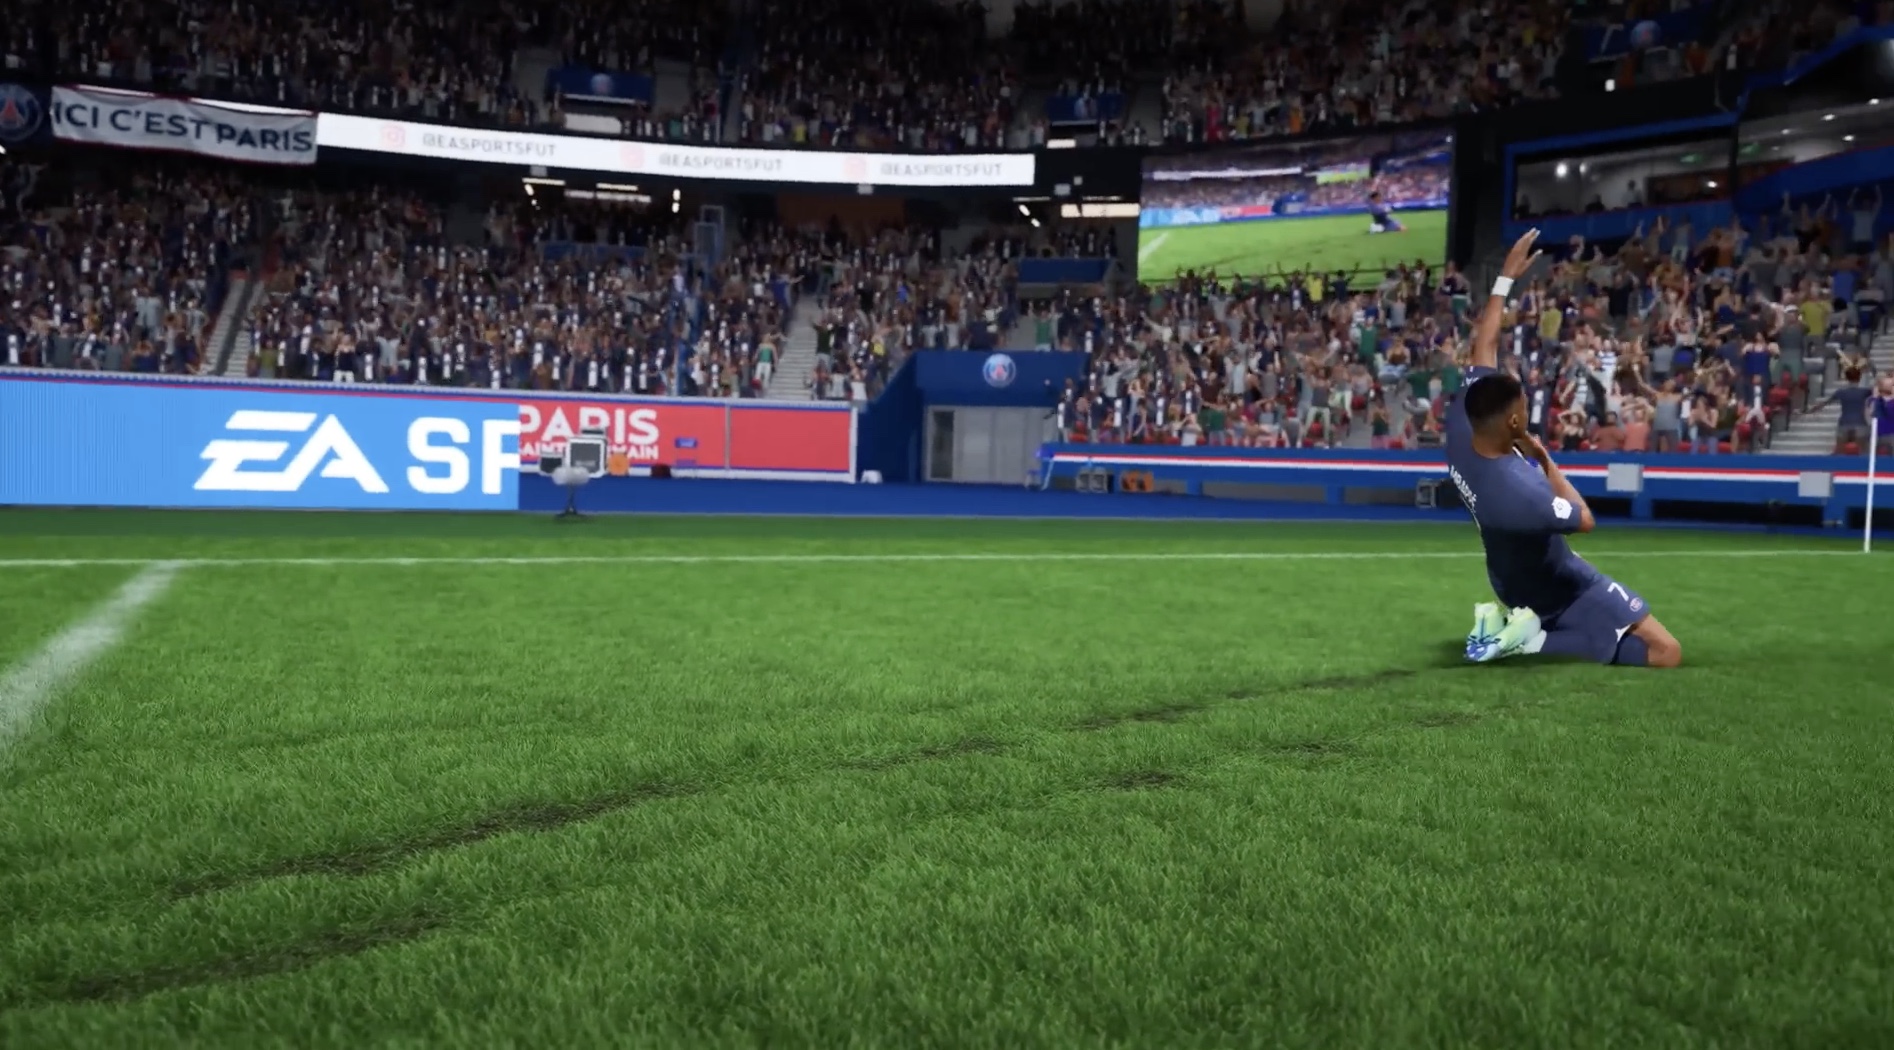 FIFA 23: Quatro pontos para entender o trailer de lançamento